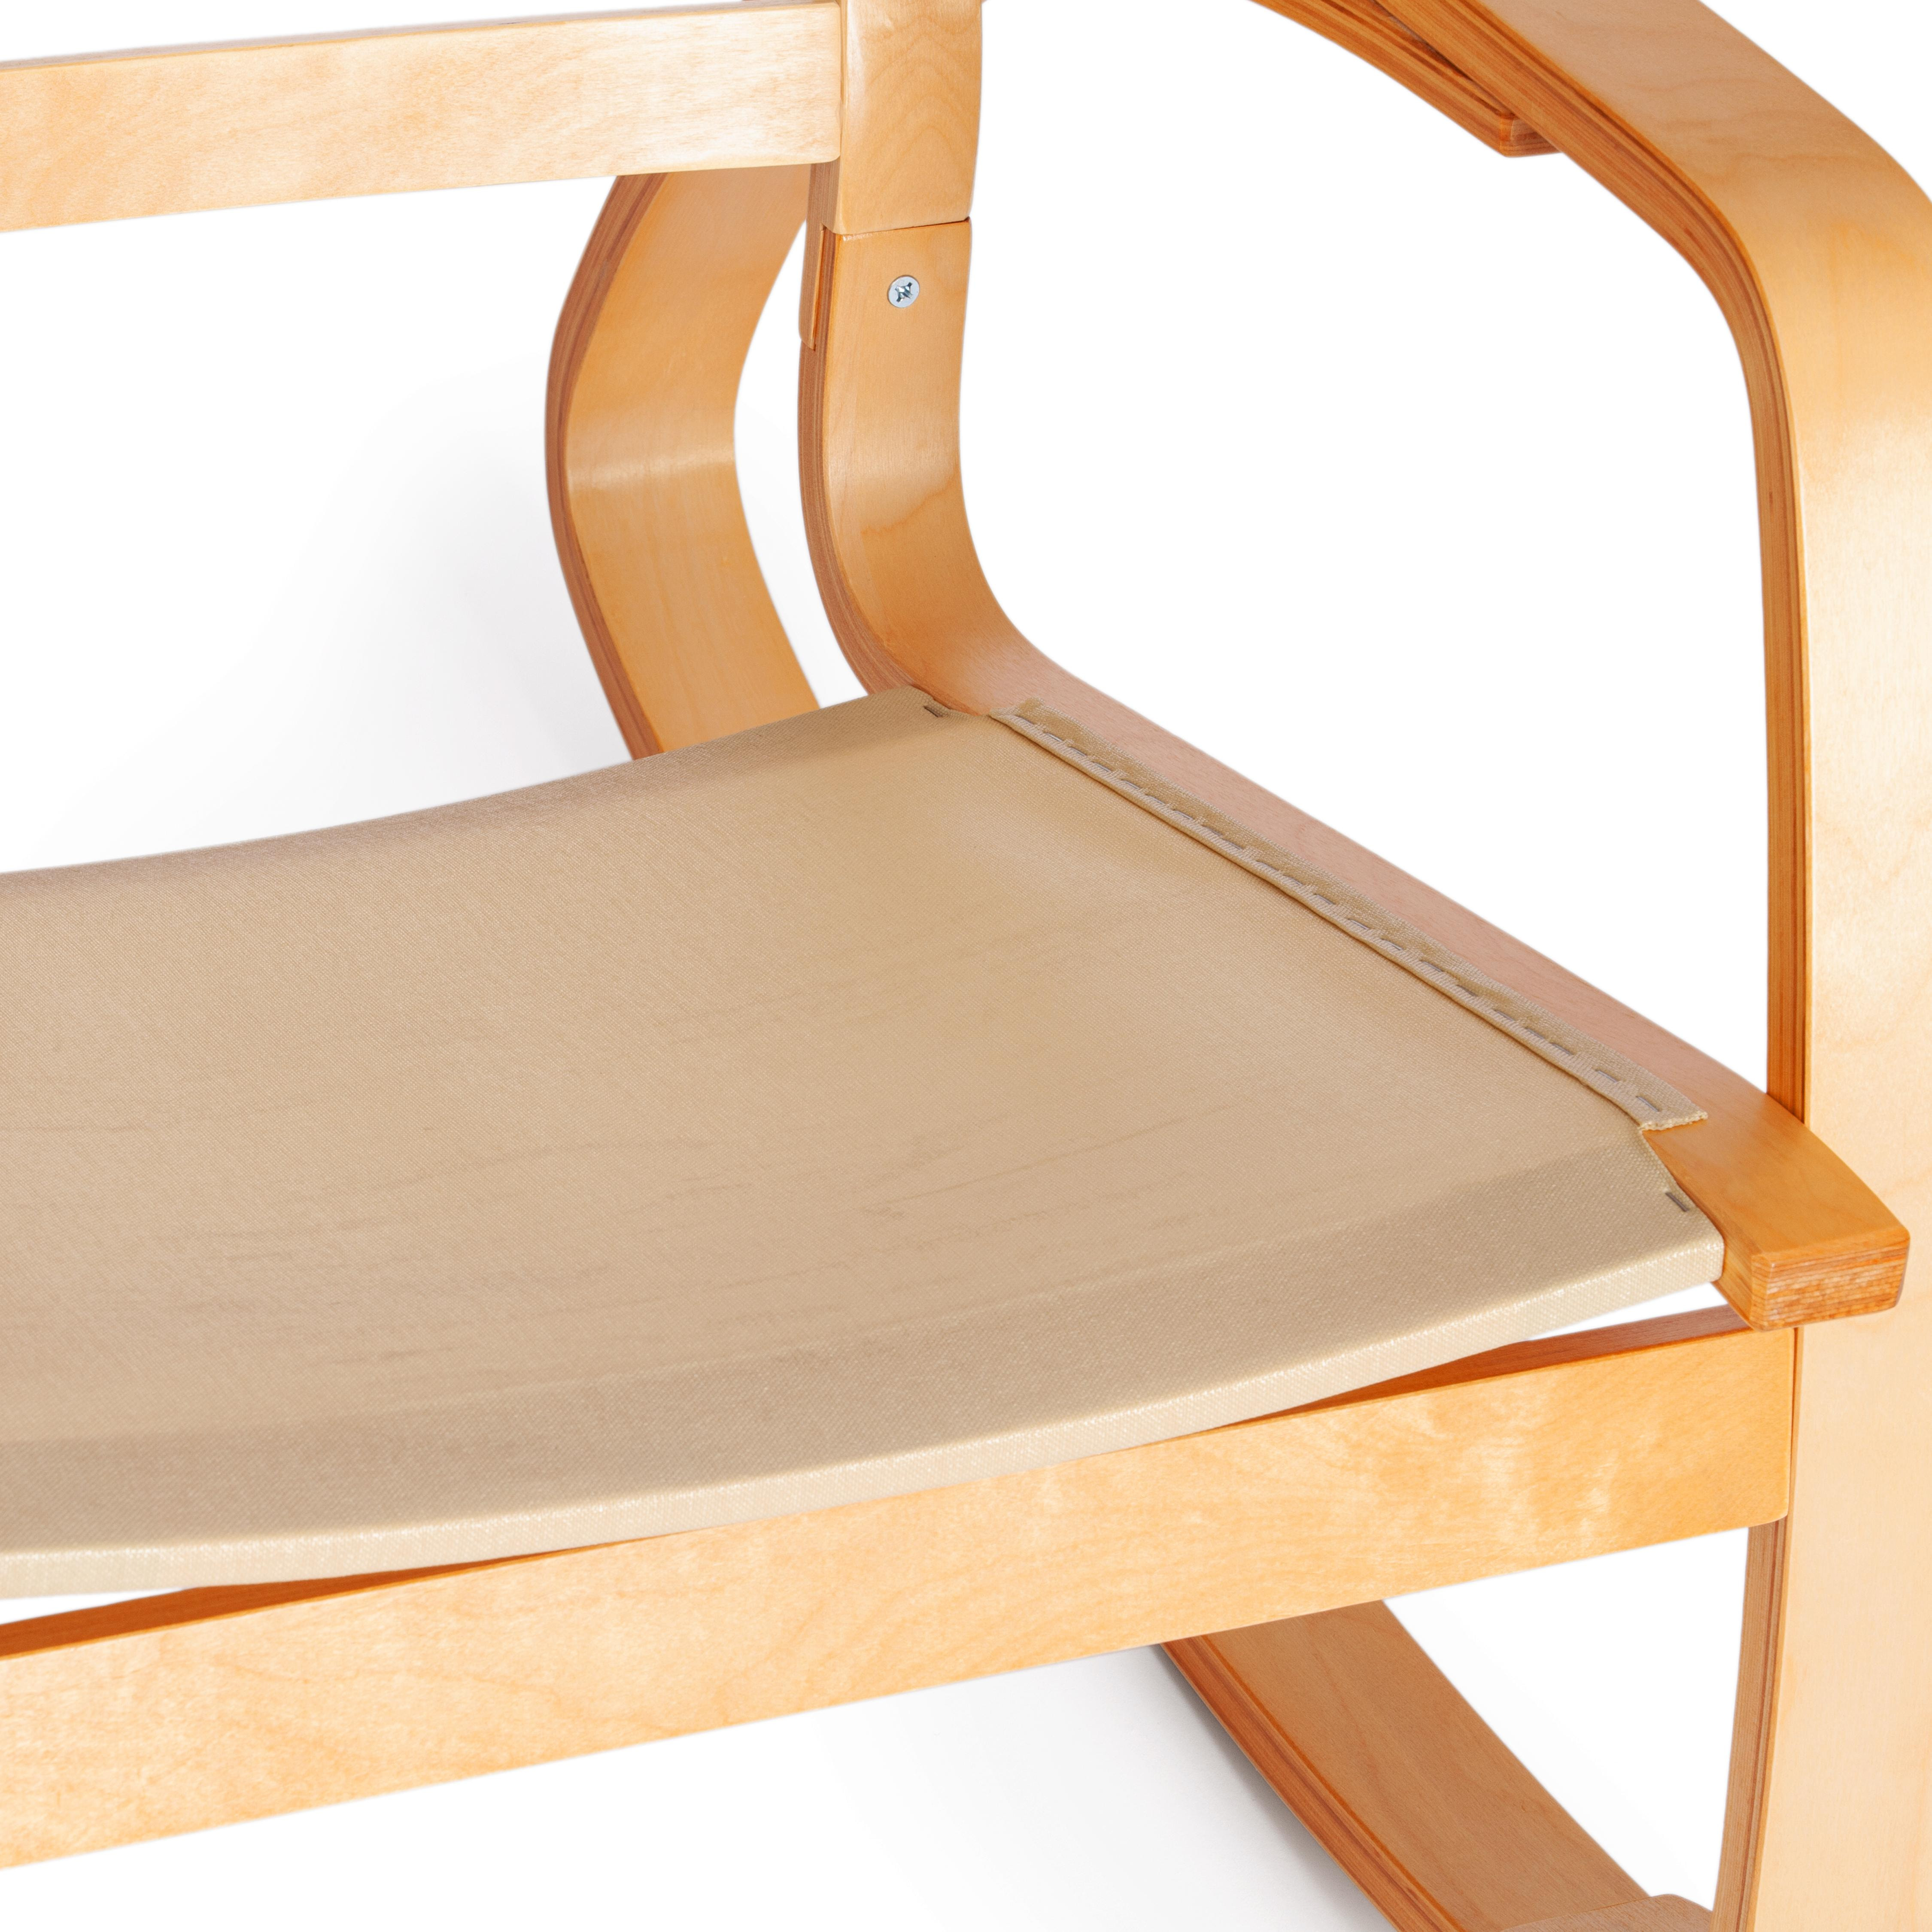 Кресло-качалка mod. AX3005 дерево береза, ткань: полиэстер/хлопок, 61х94,5х104 см, дерево: натуральный #1/ ткань светло-серая 2